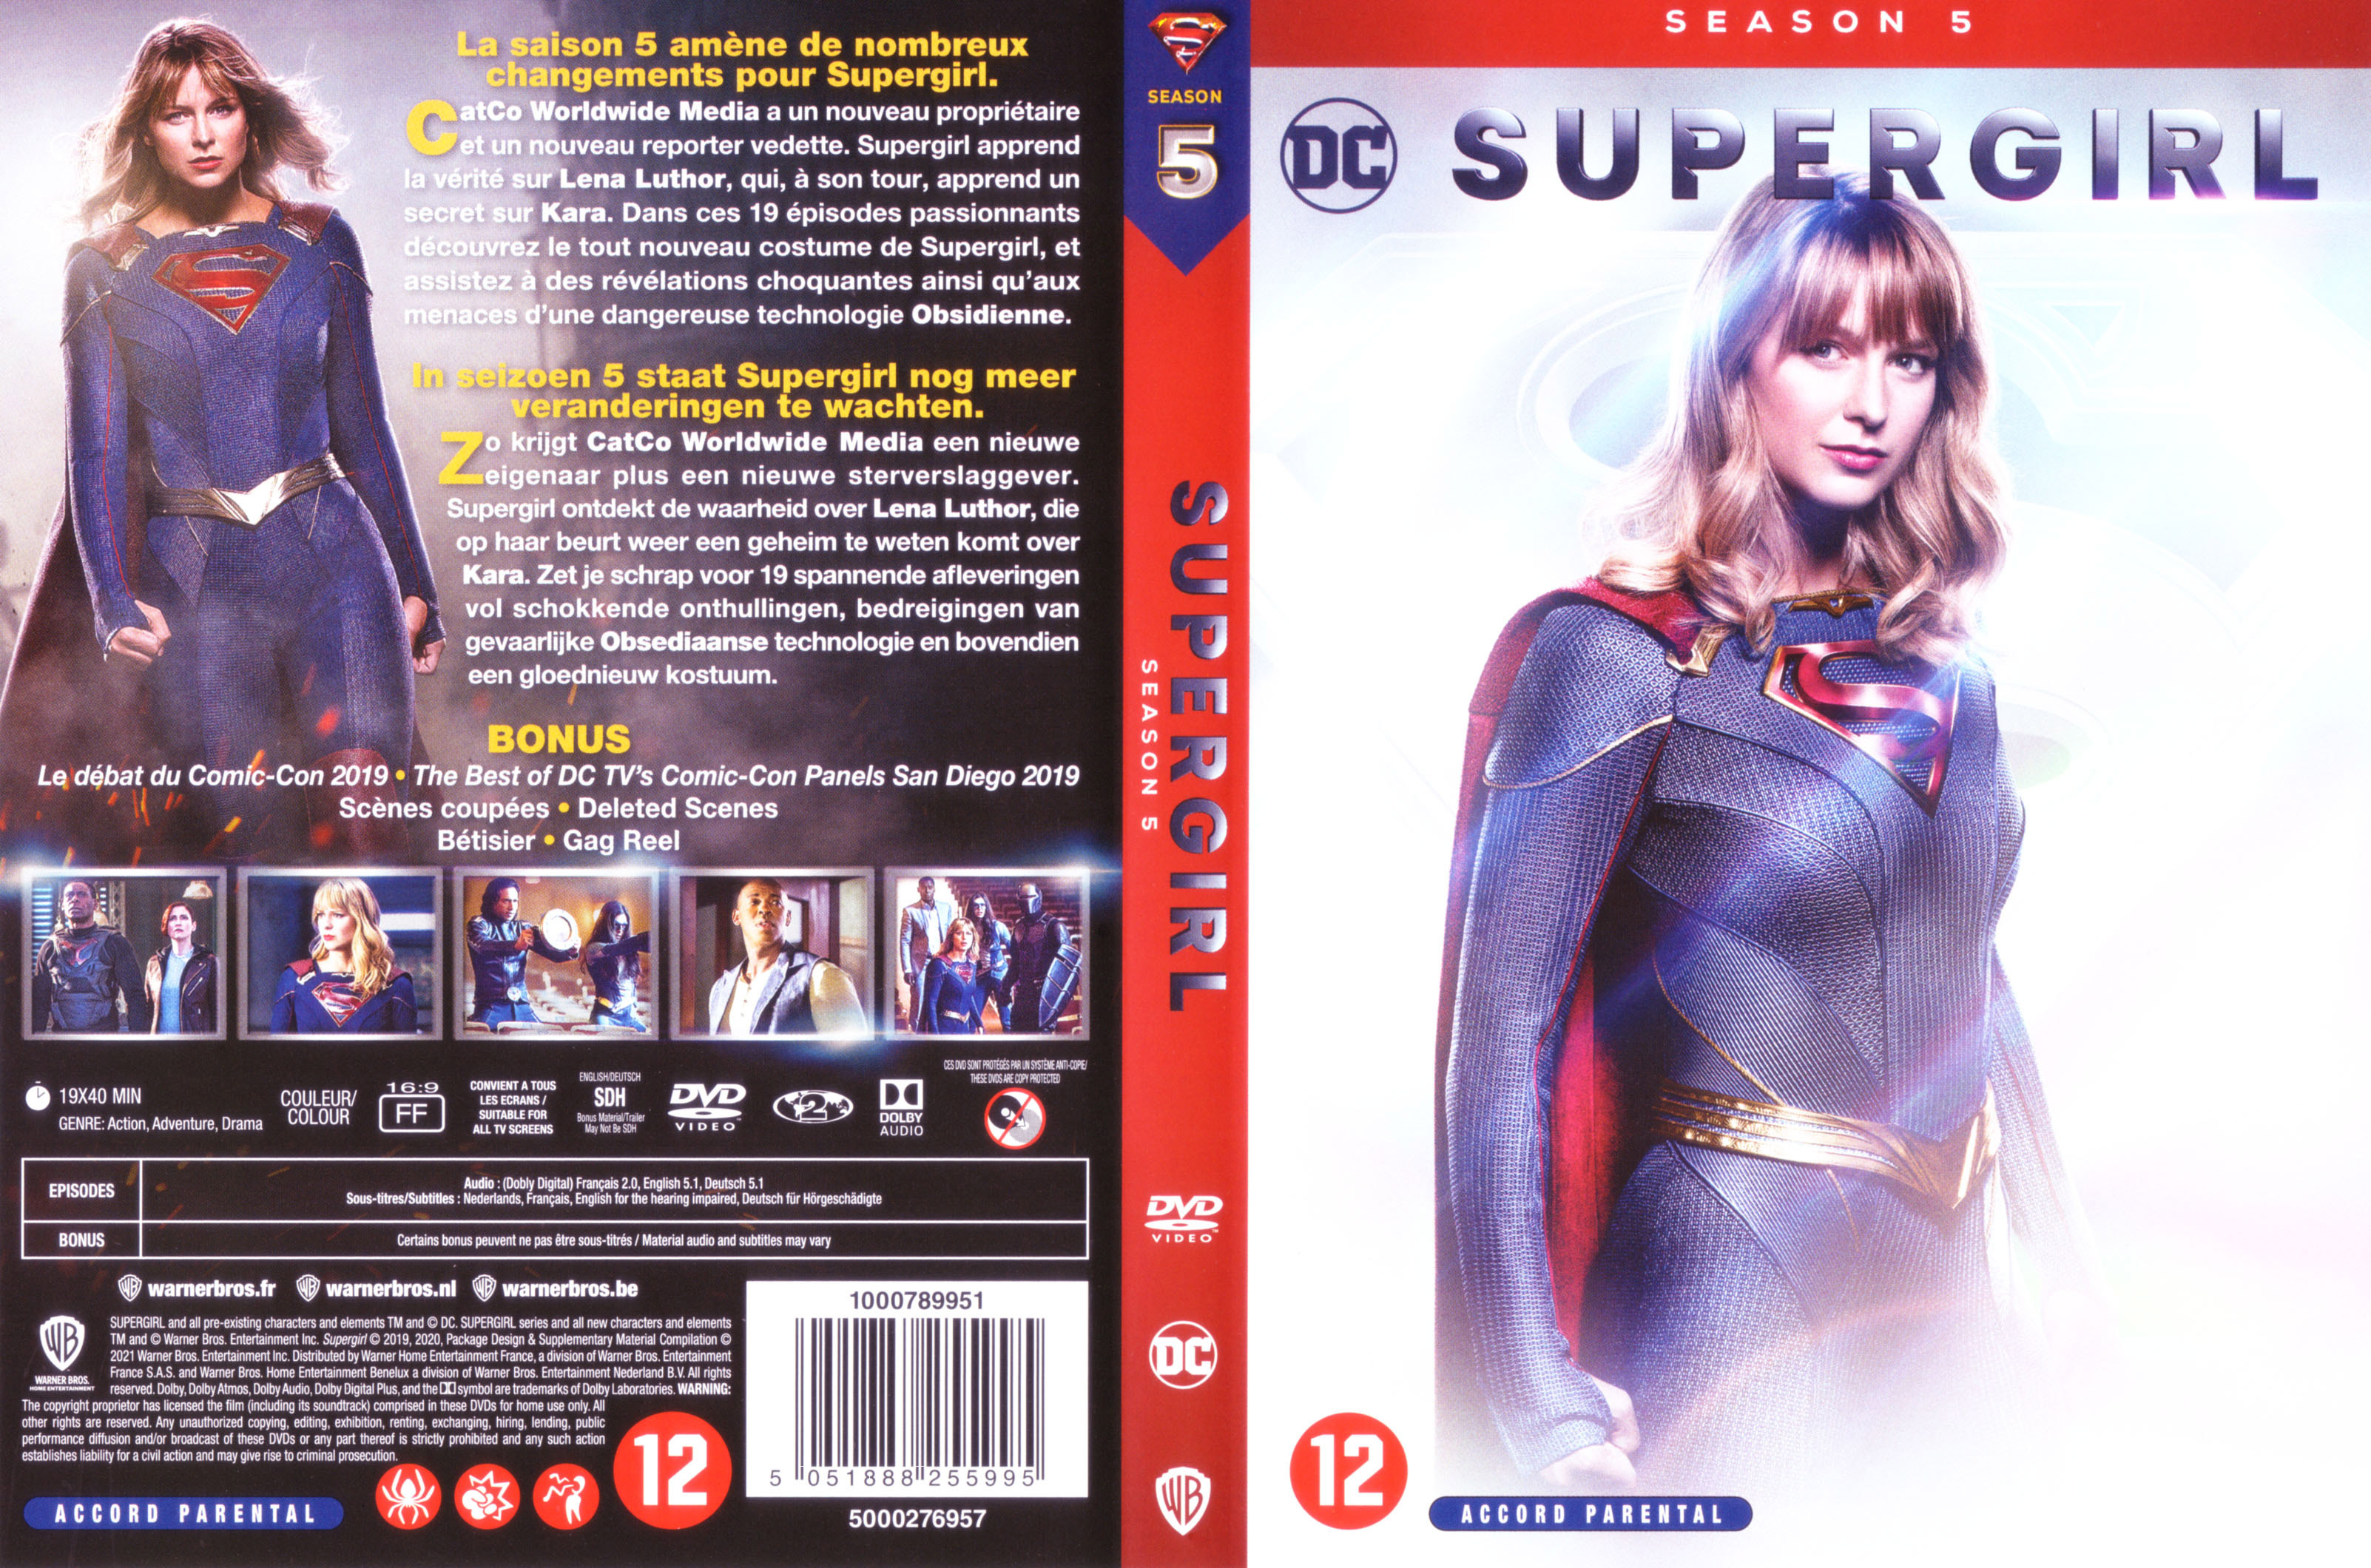 Jaquette DVD Supergirl Saison 5